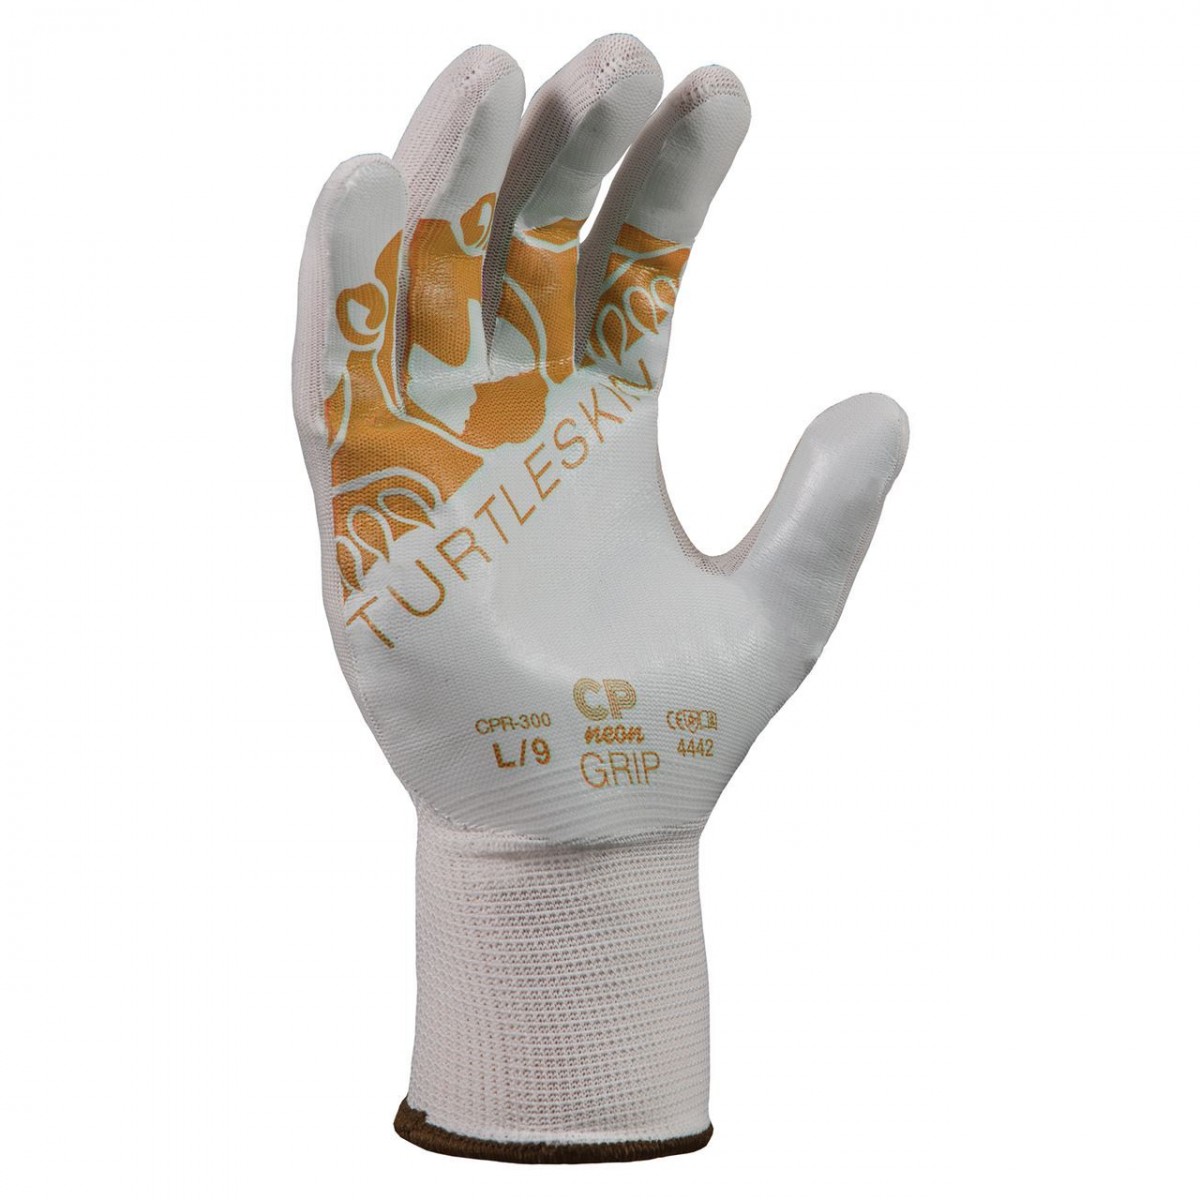 #CPN-400 Turtleskin® CP Grip 400 Puncture-Resistant Work Gloves